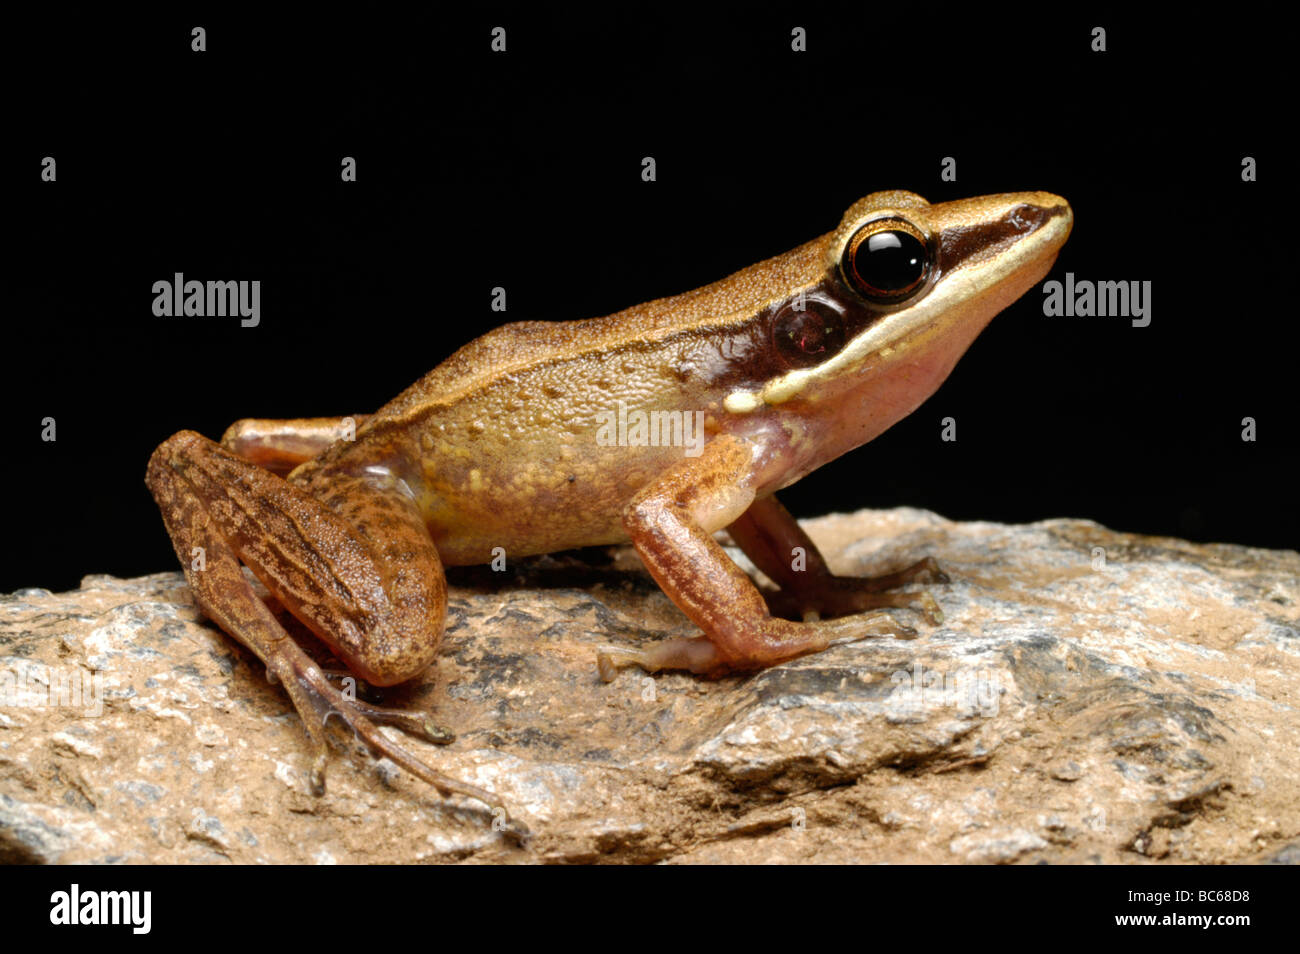 Cricket Frog, Rana nicobariensis Stock Photo